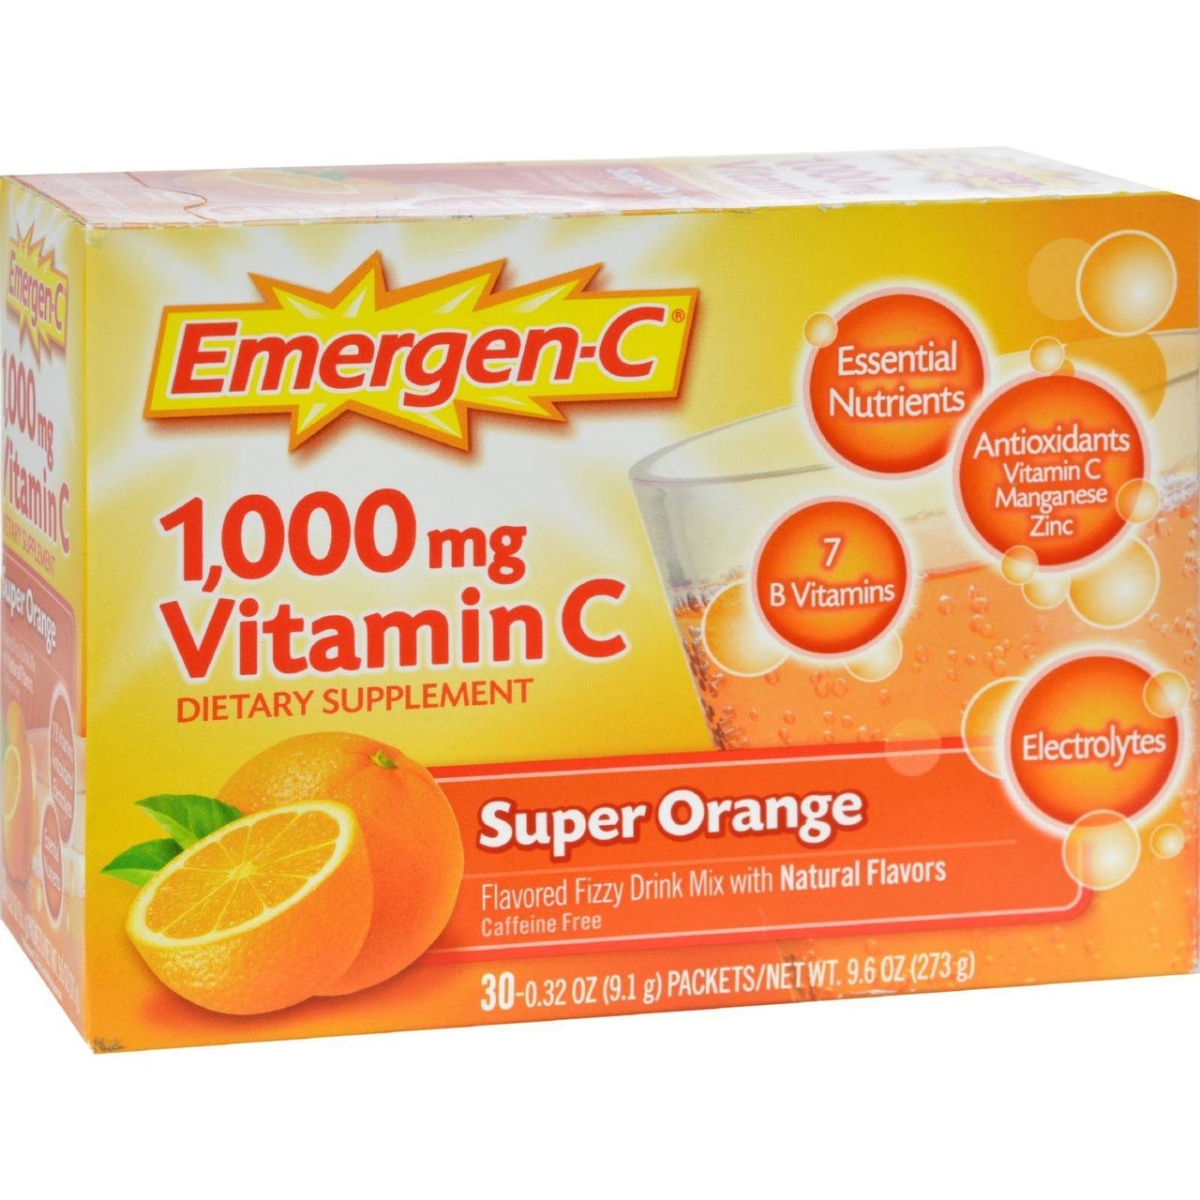 Alacer Hg0350900 1000 Mg Emergen-c Vitamin C - Super Orange, 30 Packet